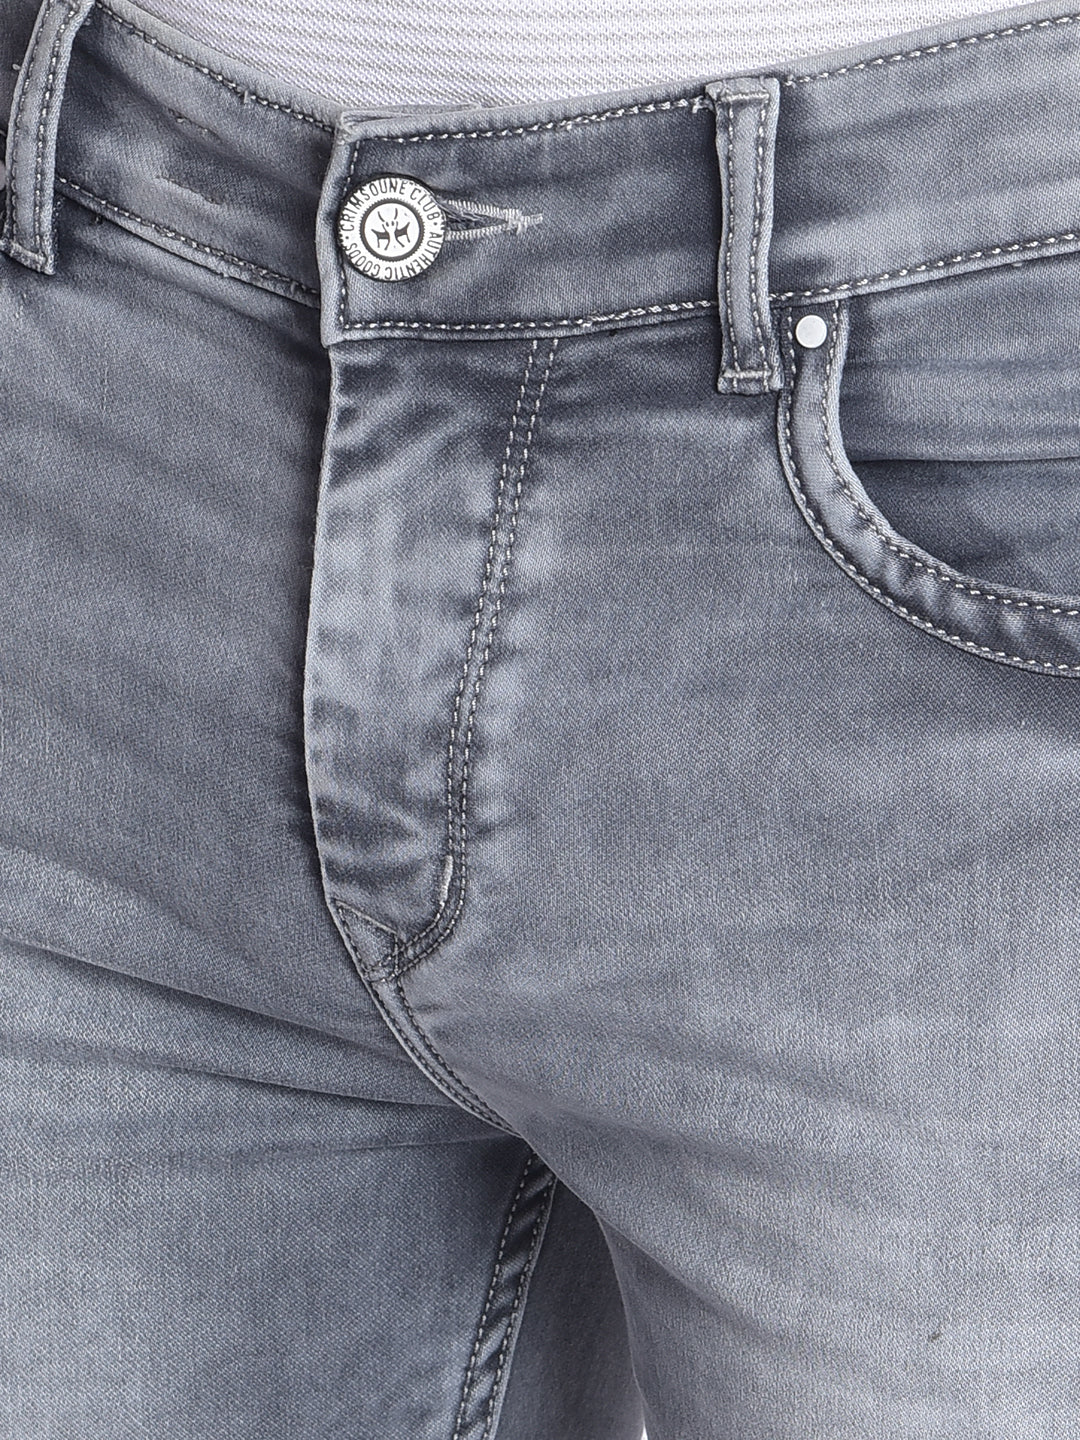 Grey Jeans-Men Jeans-Crimsoune Club